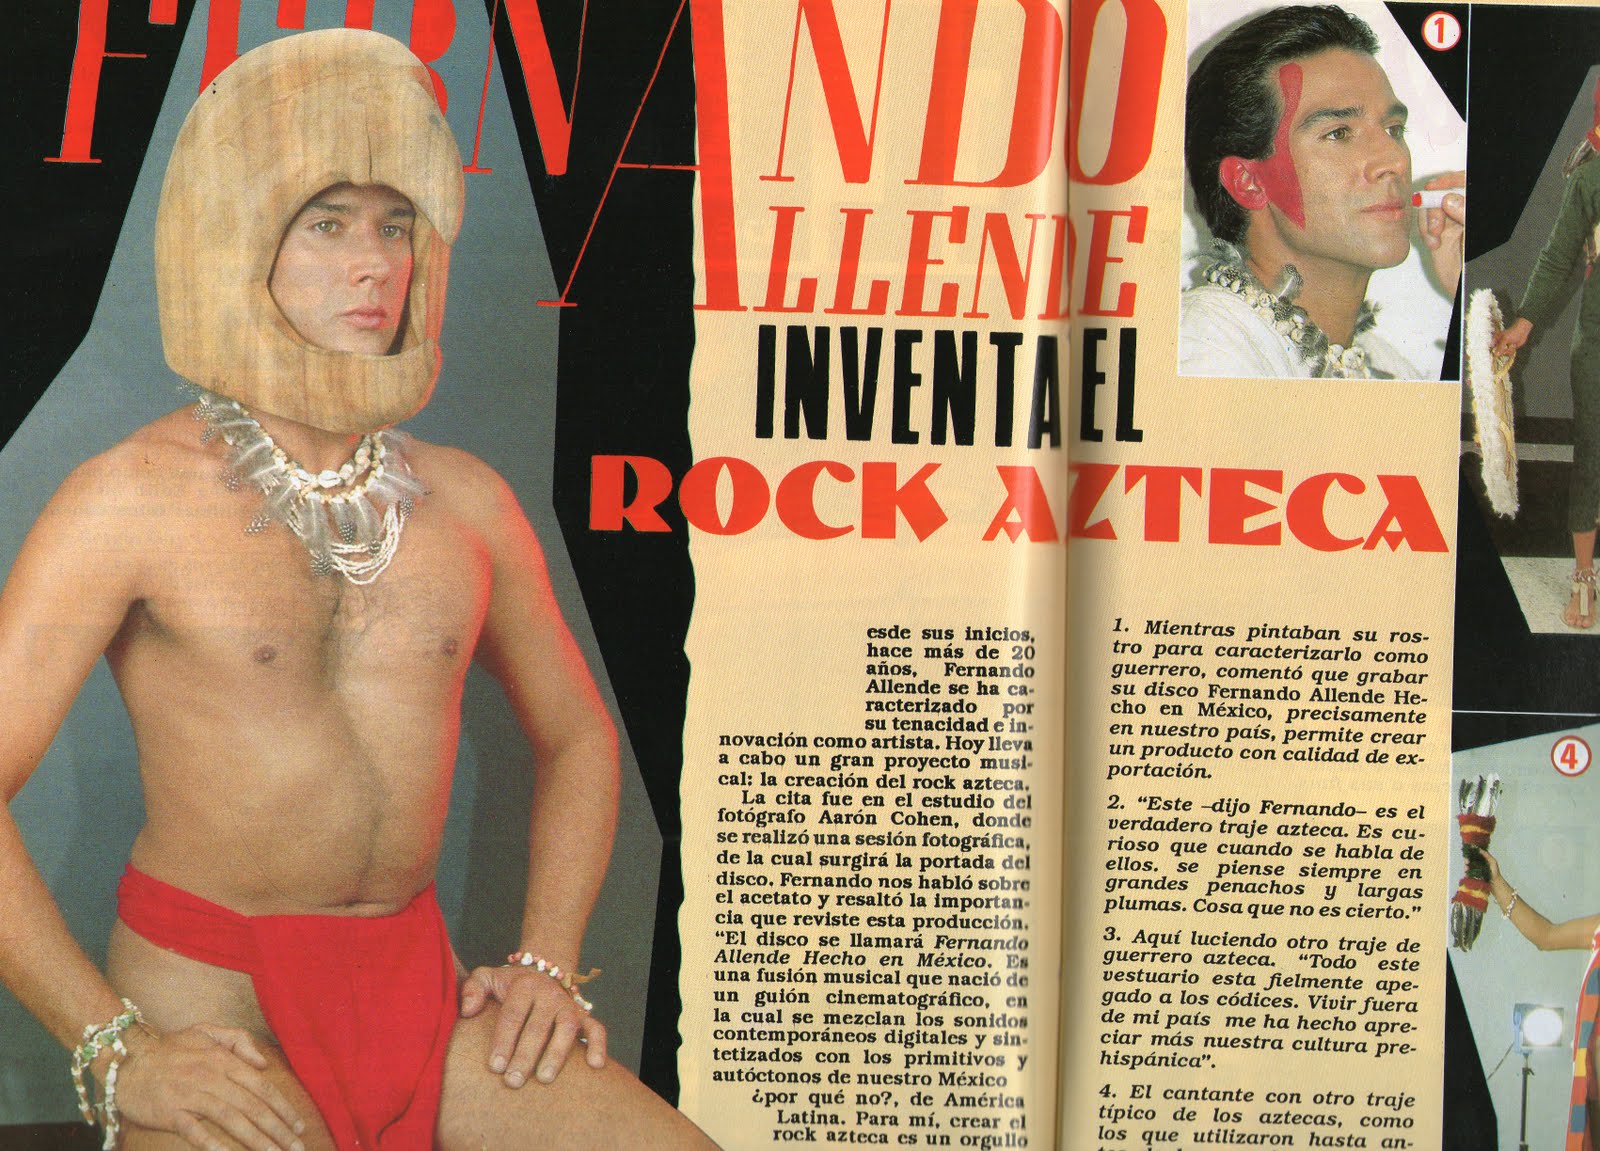 Fernando Allende Nude